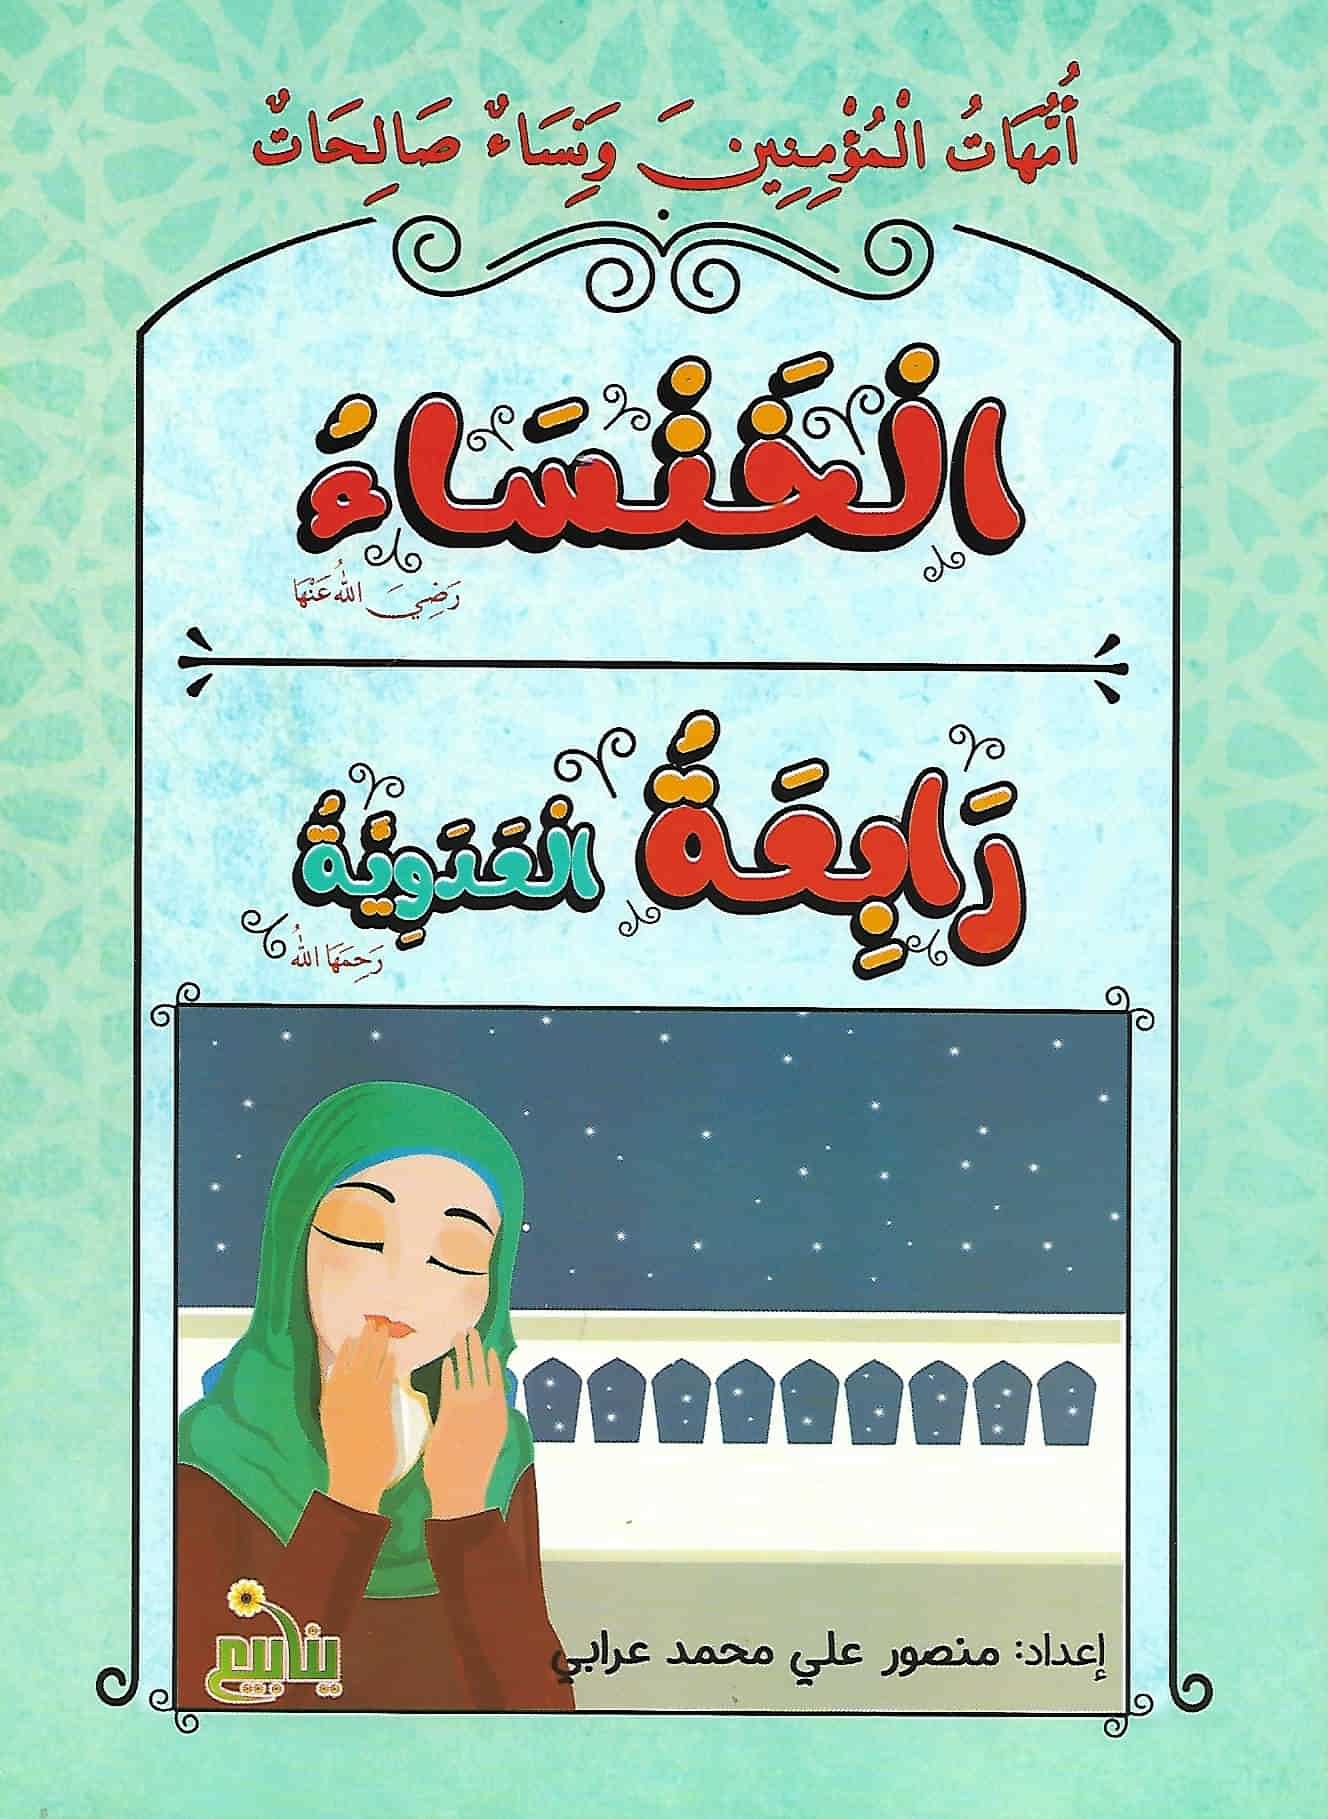 أمهات المؤمنين ونساء صالحات كتب أطفال منصور عرابي